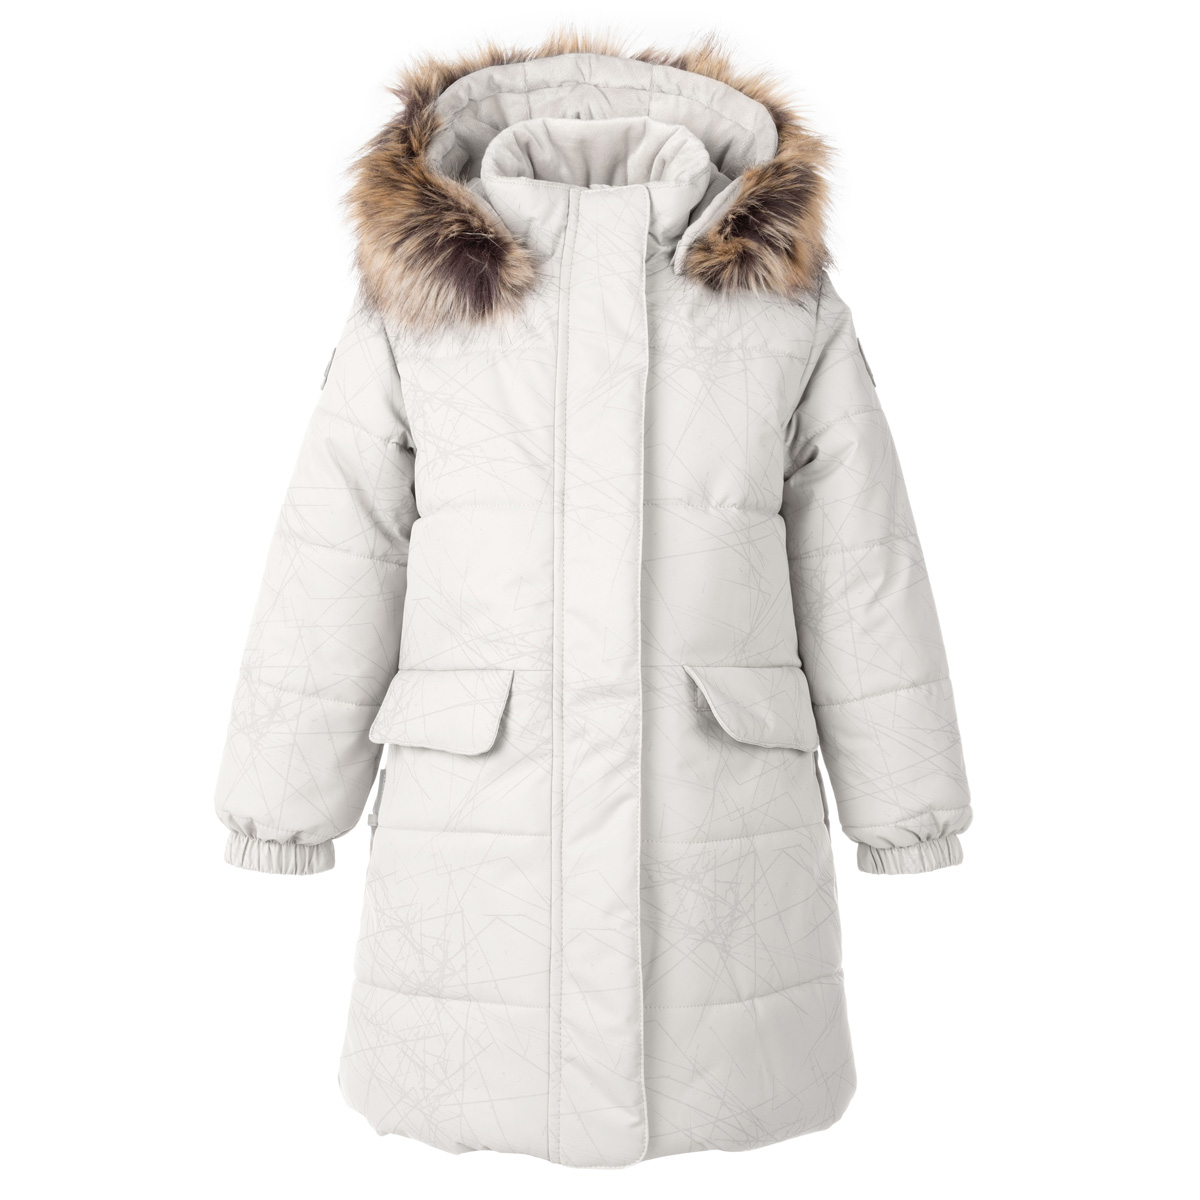 Пальто зимнее Lenne Lenna, белый зимнее пальто женское зимнее пальто новое короткое зимнее пальто с воротником стойкой утепленное универсальное зимнее пальто